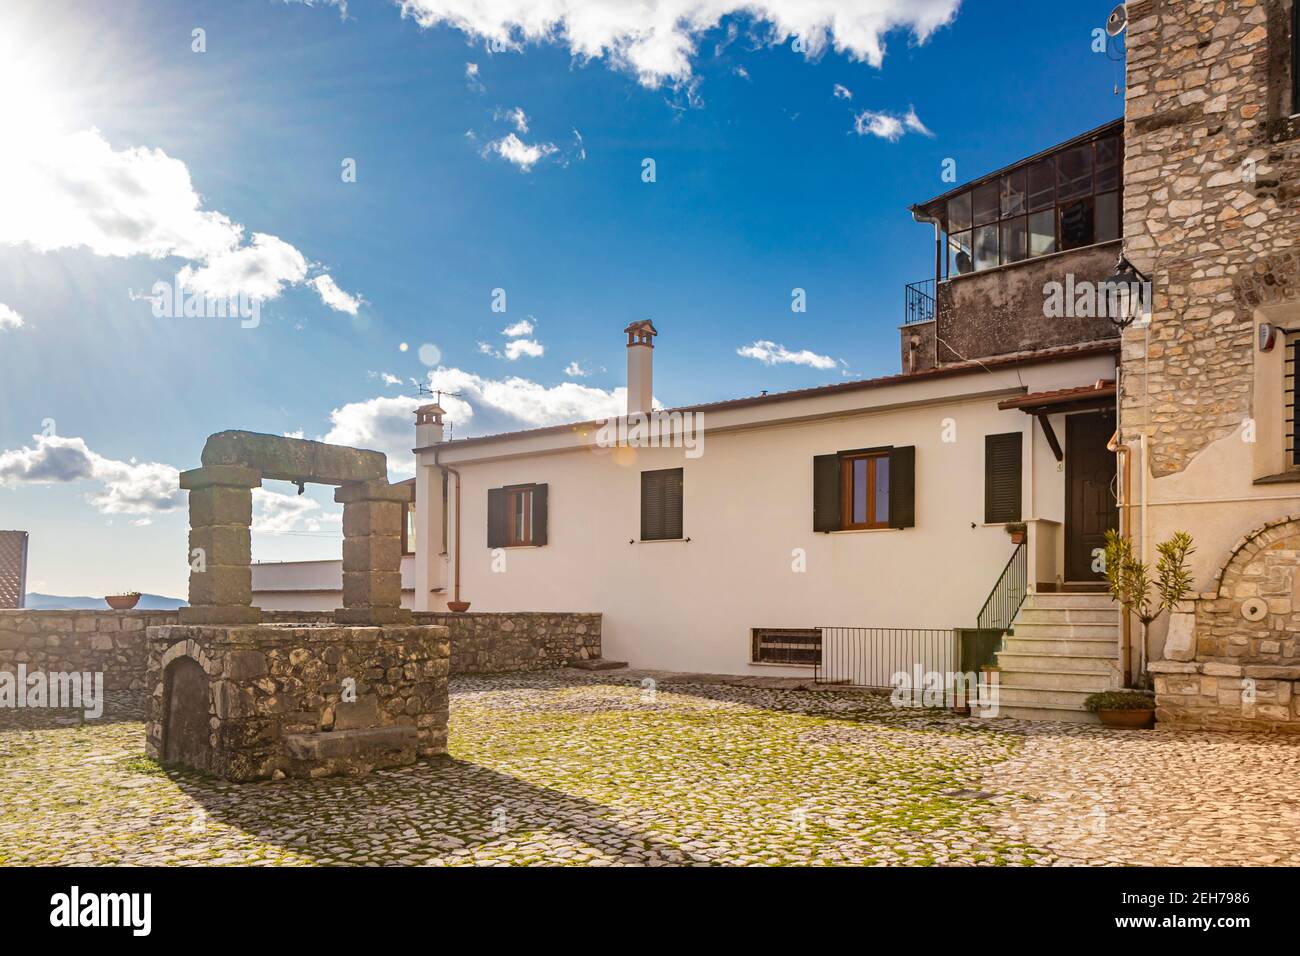 February 12, 2021 - Castel San Pietro Romano, Lazio, province of Rome, Palestrina - A glimpse of the medieval village, with the small cobbled square b Stock Photo